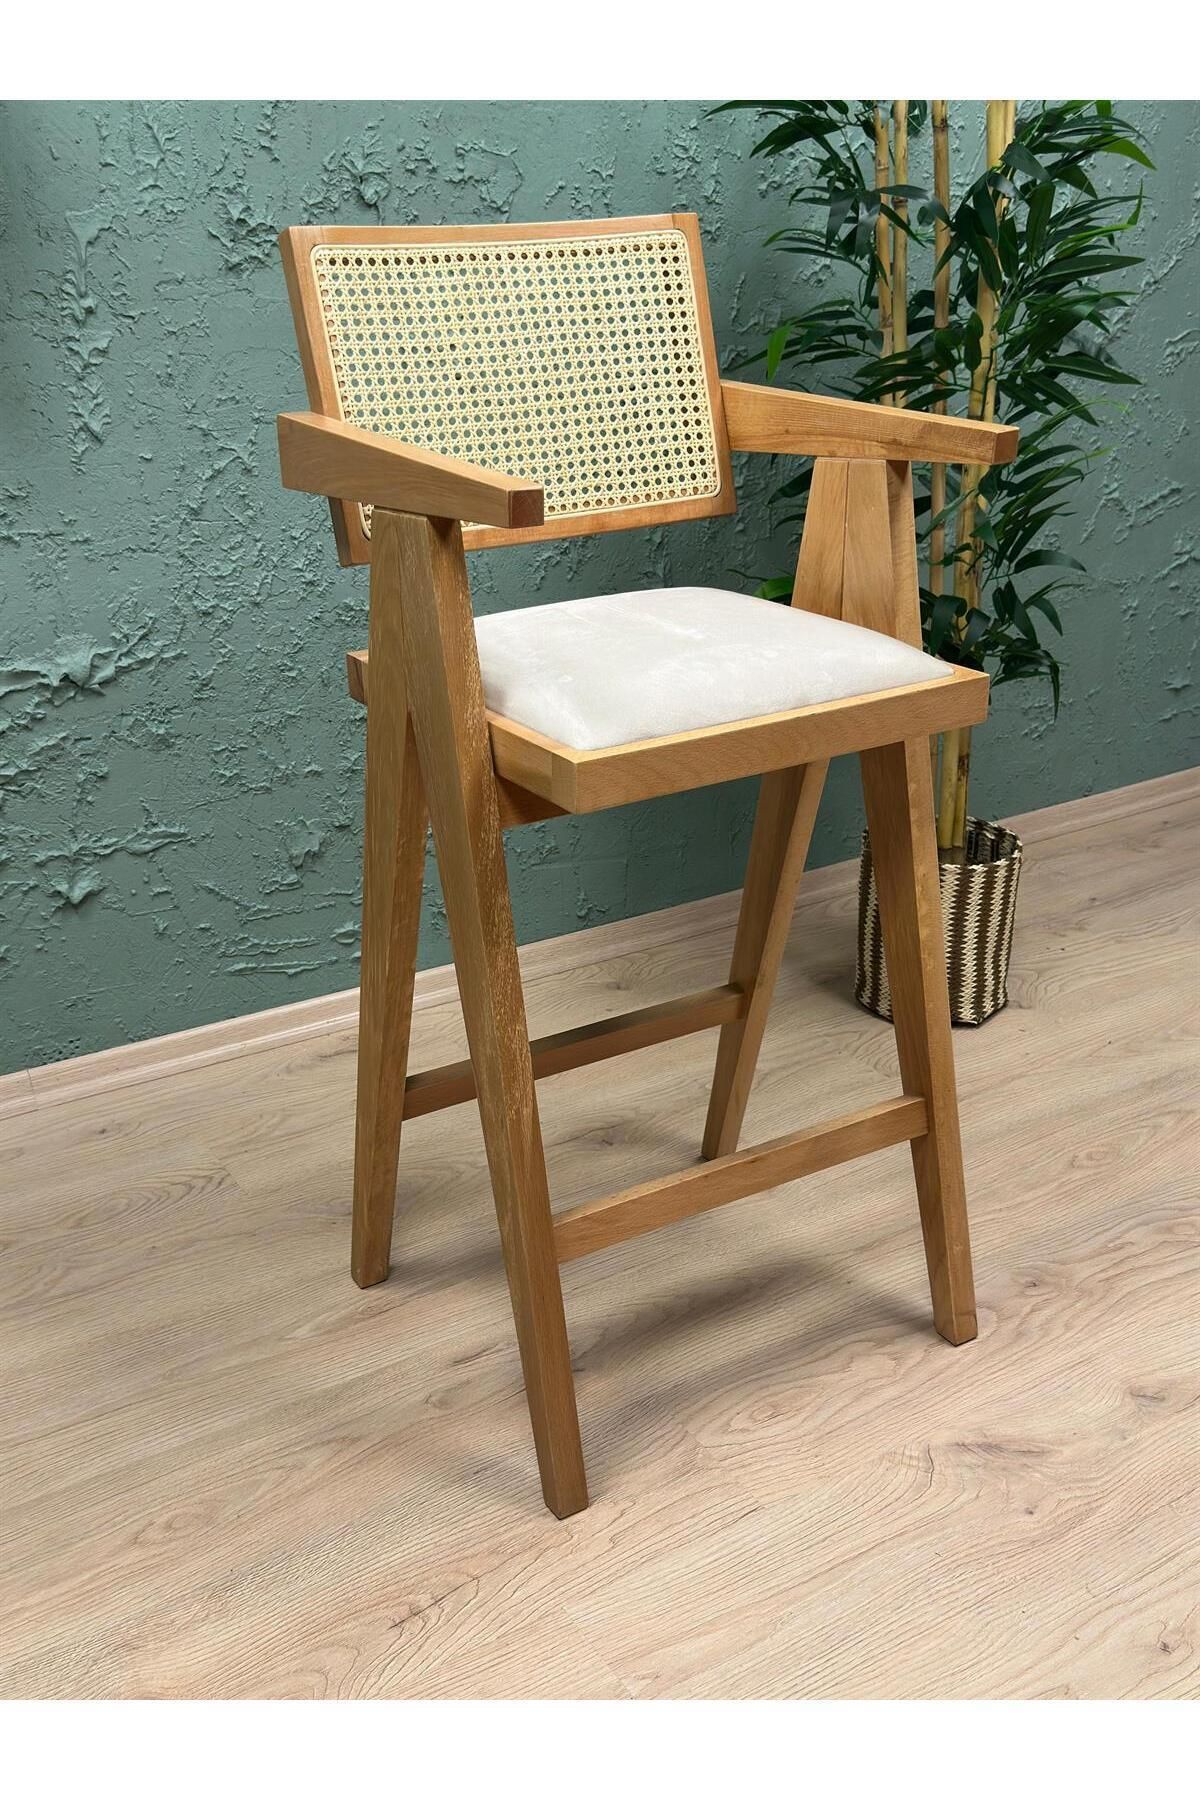 Belmino Mobilya Luna Kollu Hasırlı Ahşap Bar Sandalyesi - Ahşap Sandalye - Mutfak Cafe Yemek Masası Sandalyesi